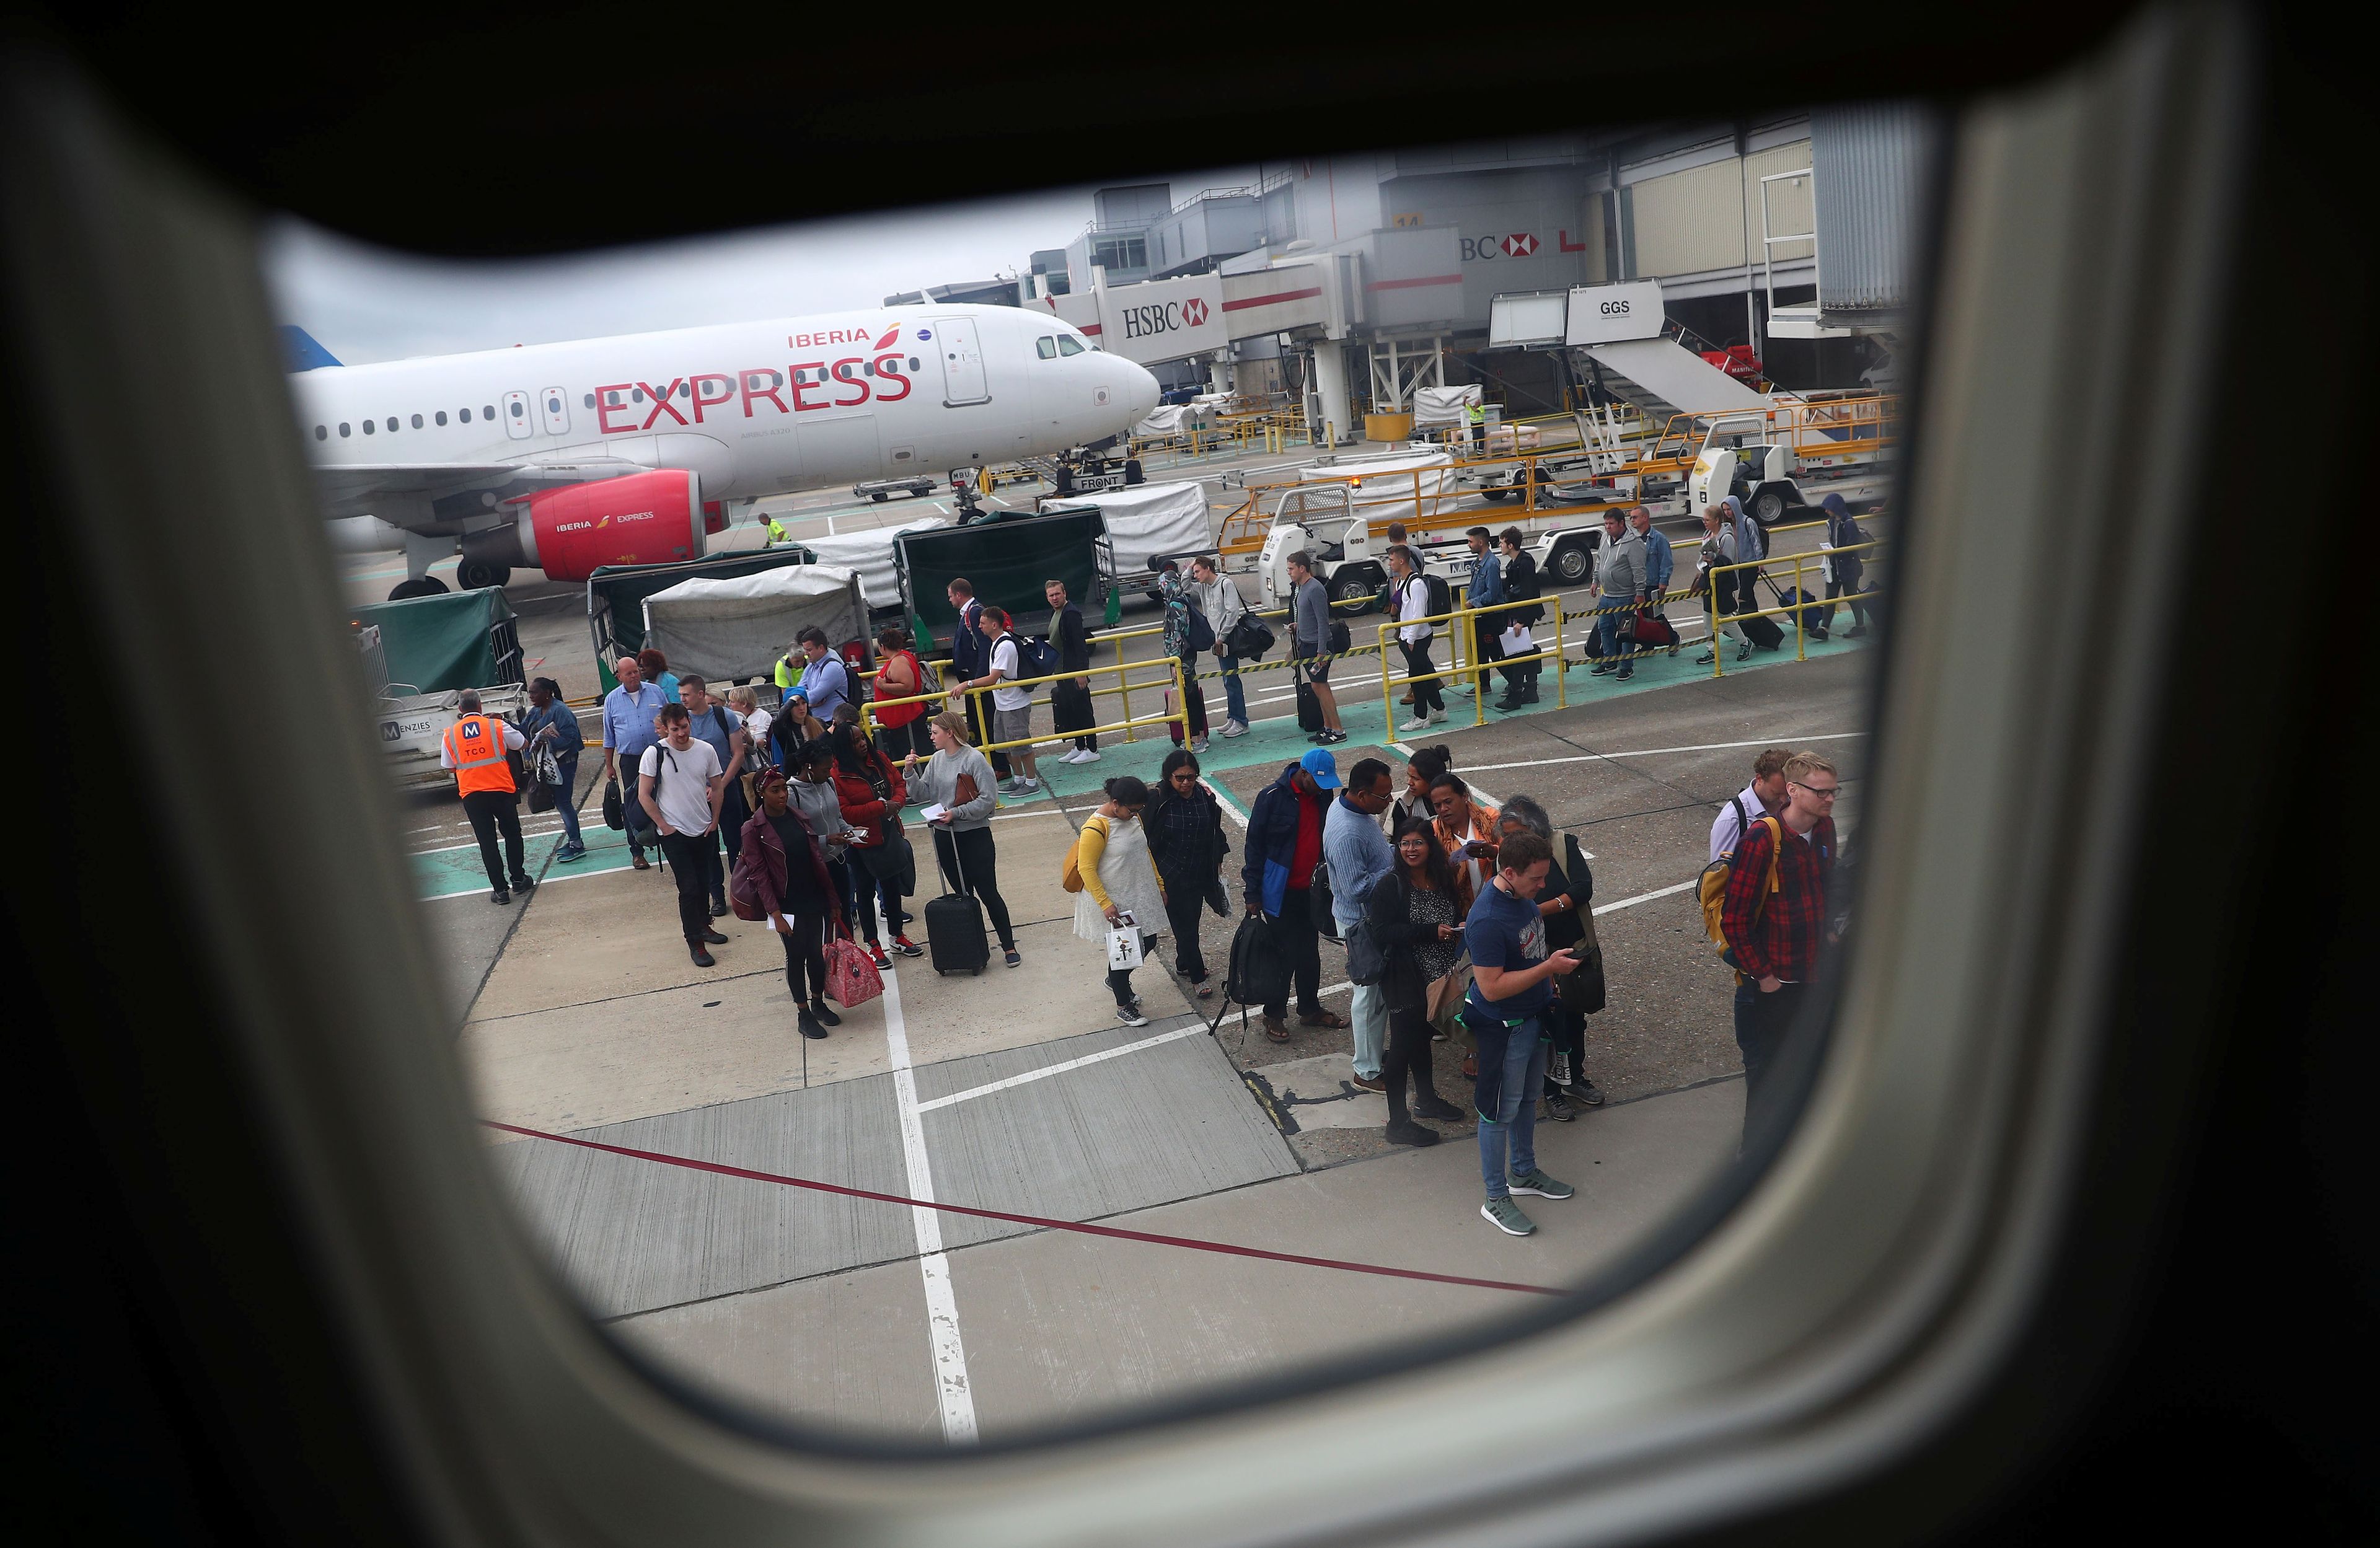 Pasajeros esperan para embarcar en un vuelo de Ryanair mientras un avión de Iberia Express espera en su puesto en el aeropuerto de Gatwick en Londres.